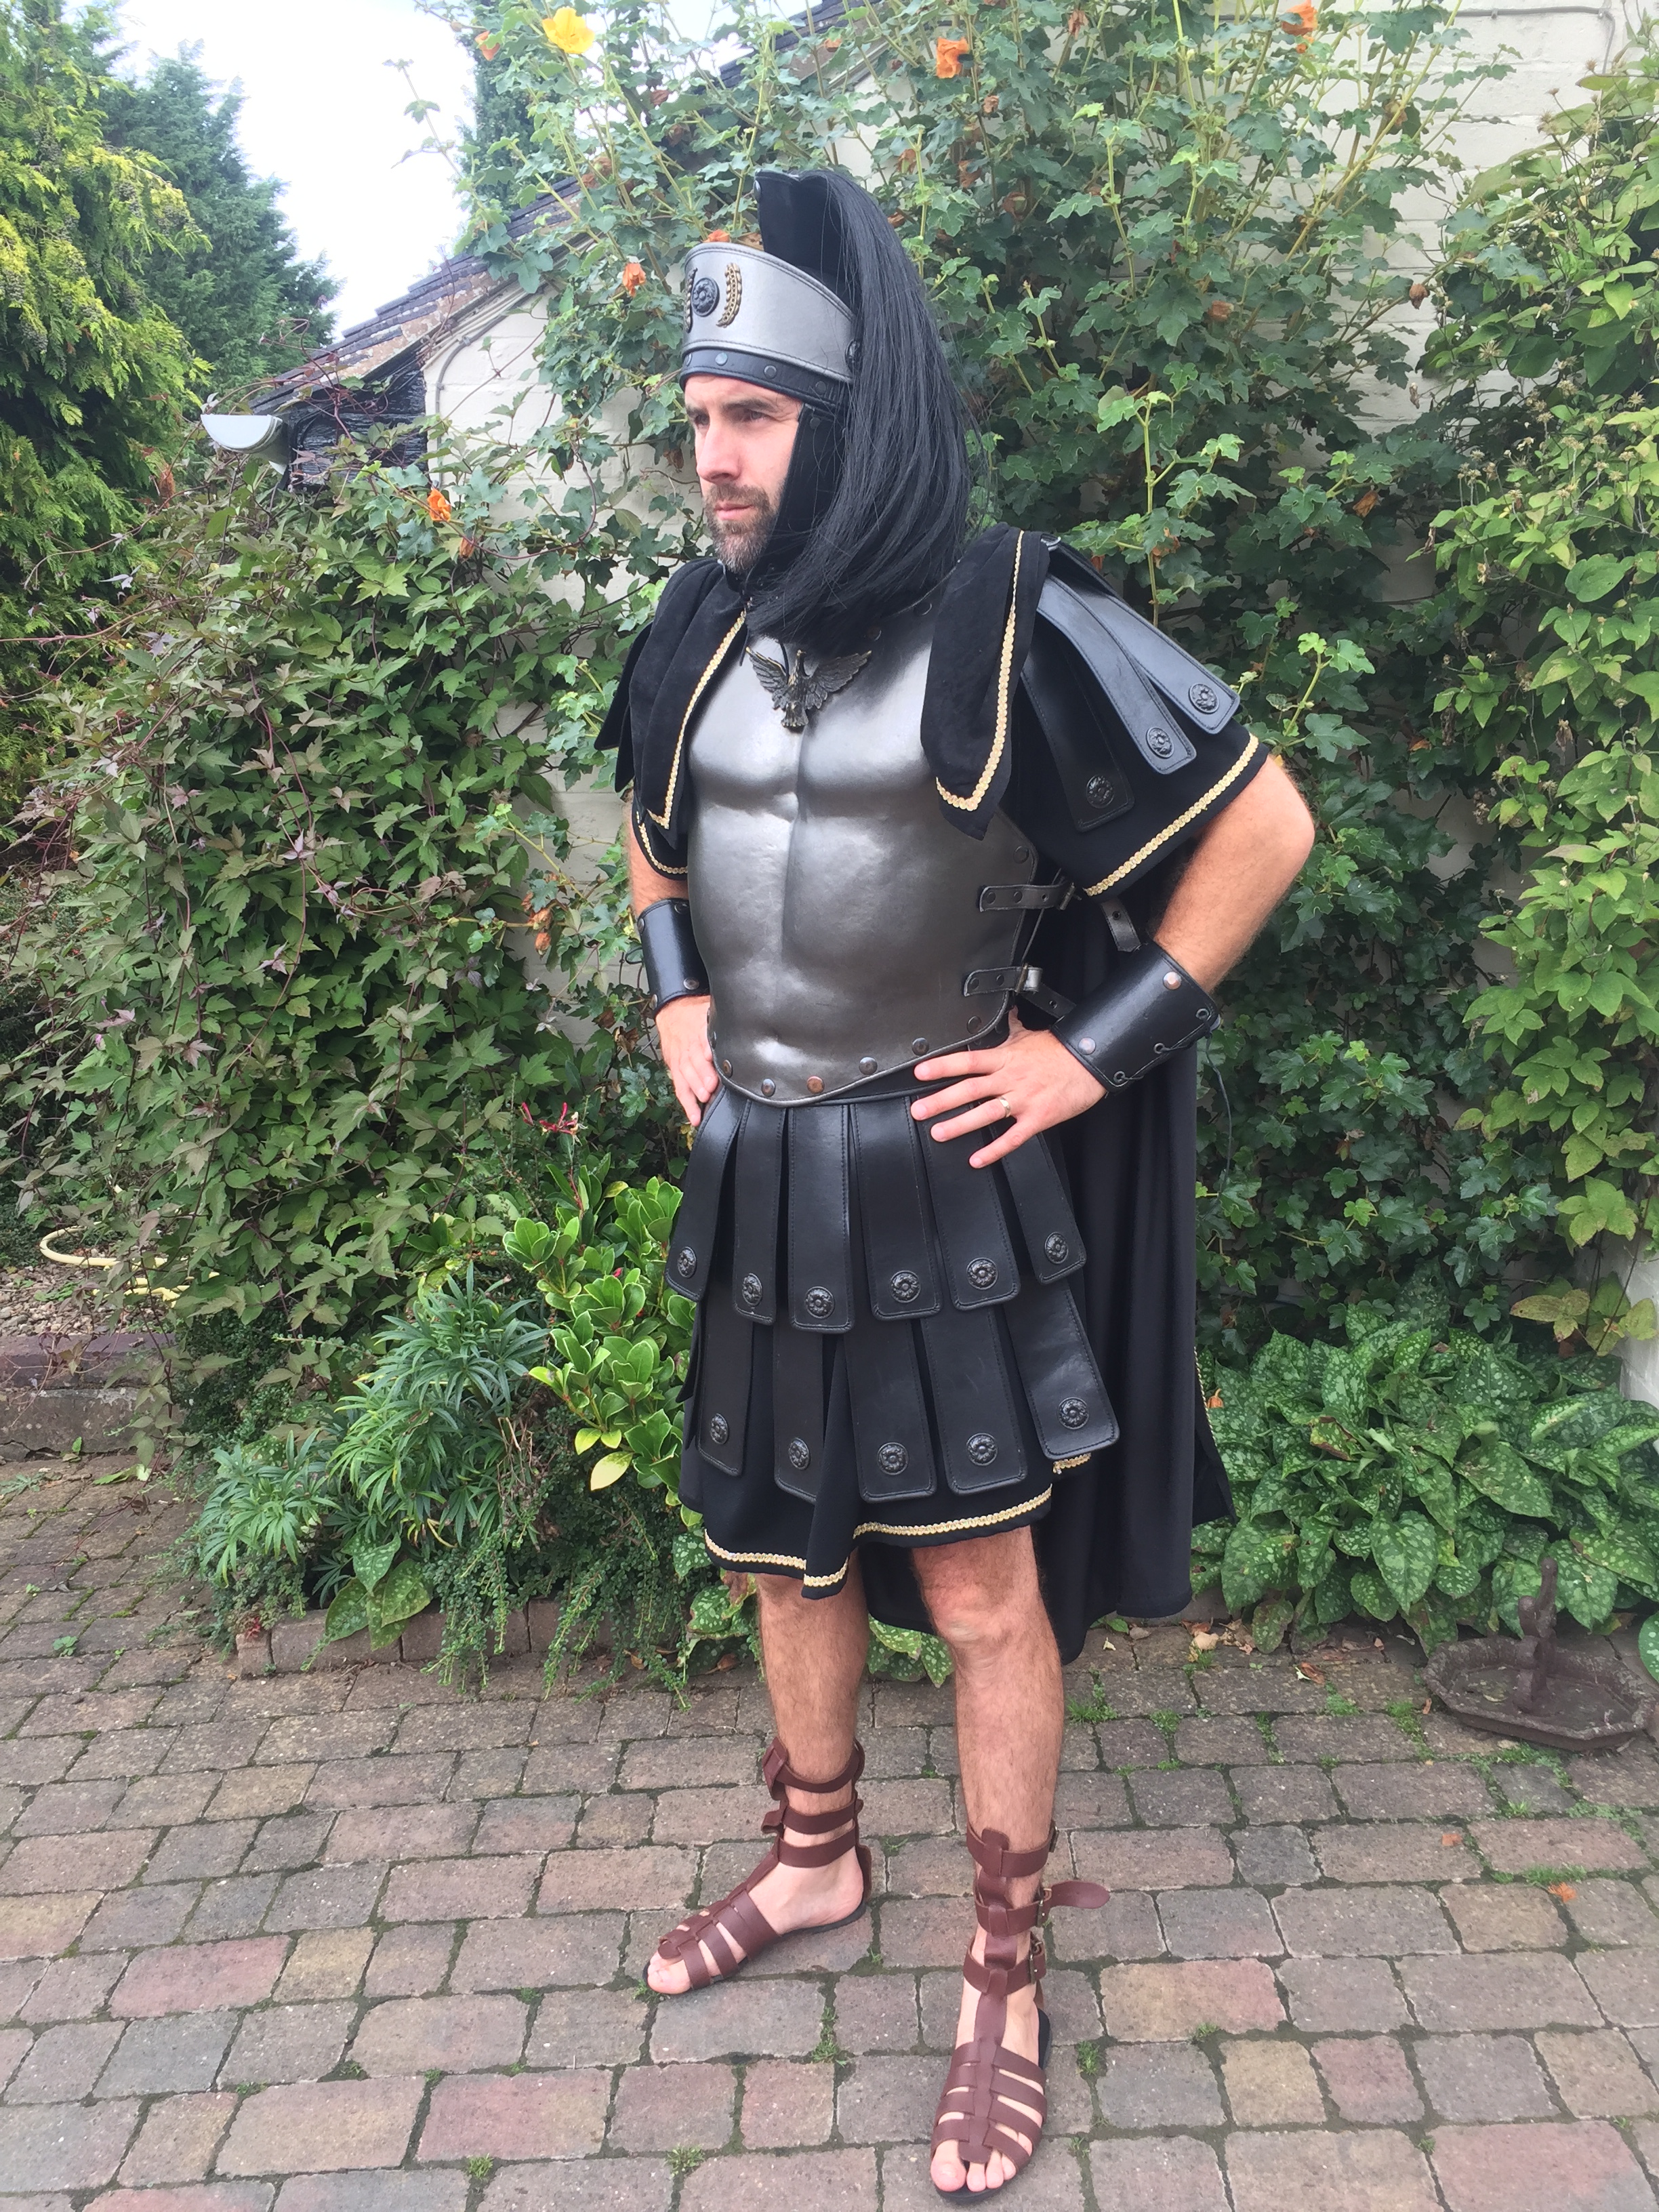 Black Leather Brutus Gladiator Costume - Masquerade